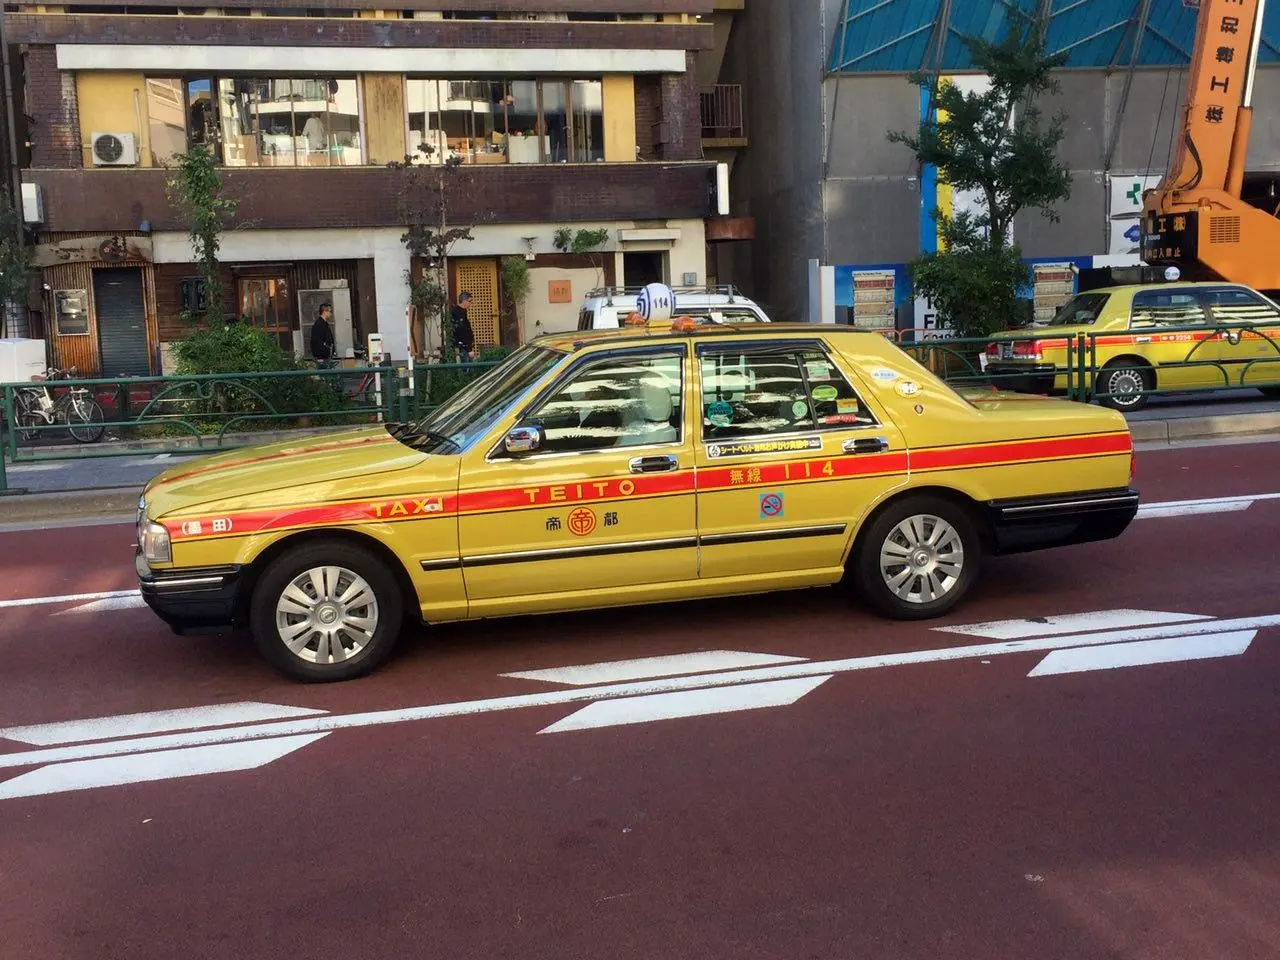 بازار کار جدید برای رانندگان تاکسی در ژاپن